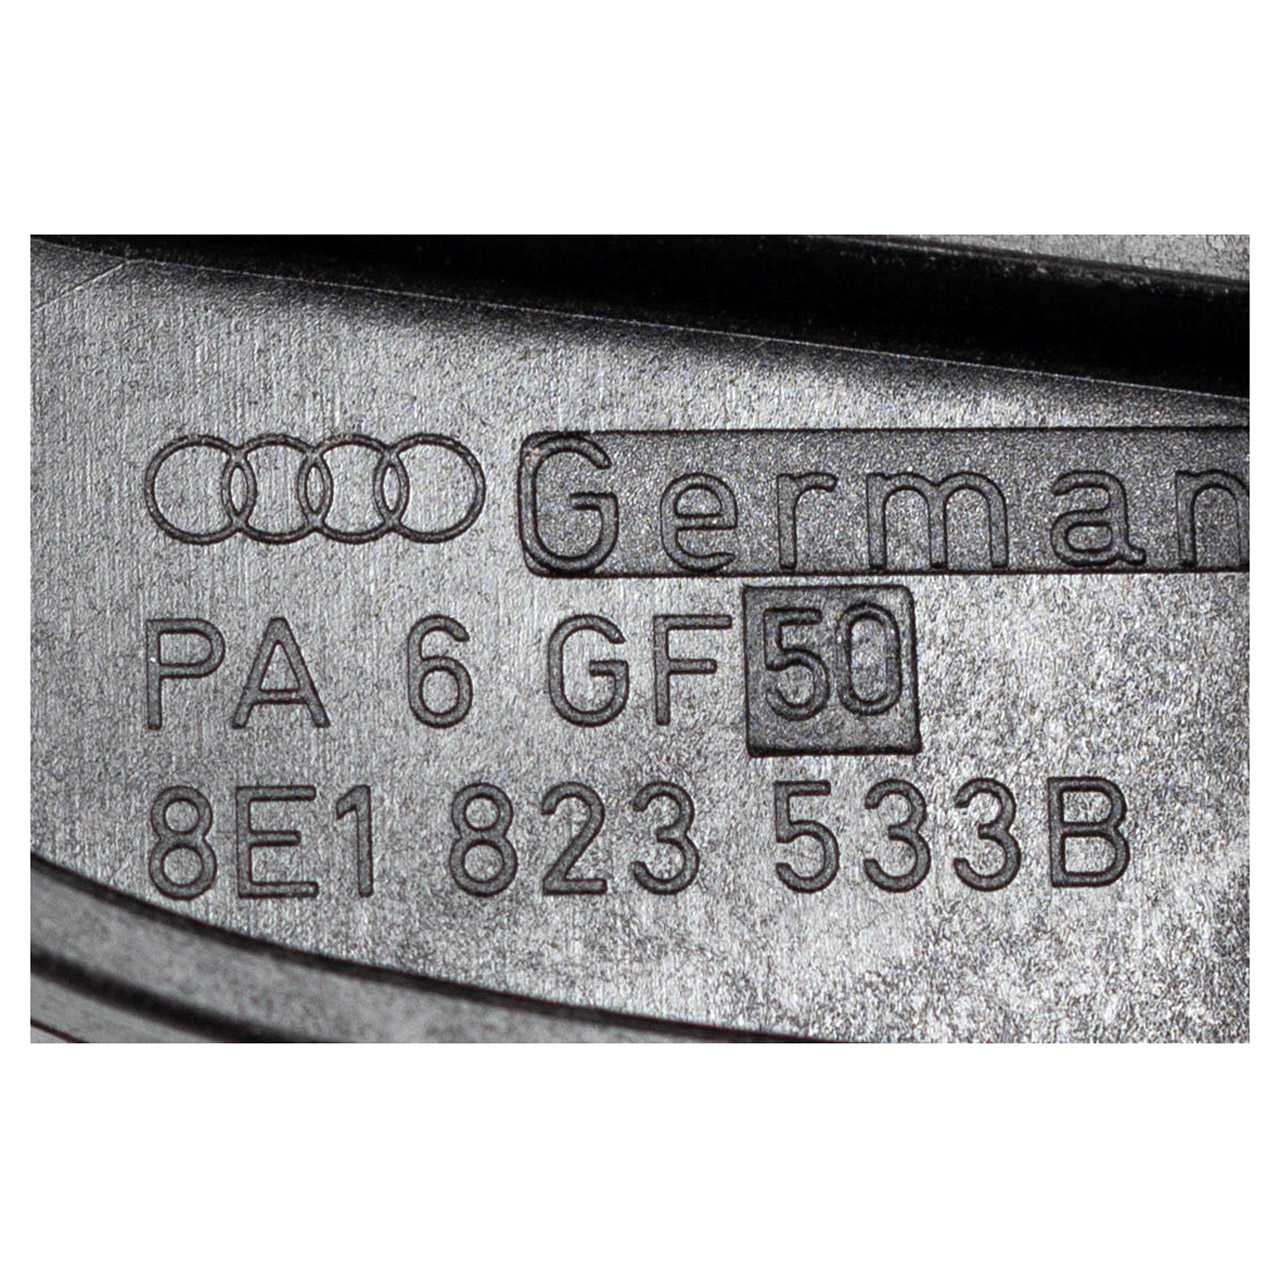 ORIGINAL Audi Seat Hebel Motorhaubenzug Motorhaubenöffner A4 B6 Exeo 8E1823533B 01C